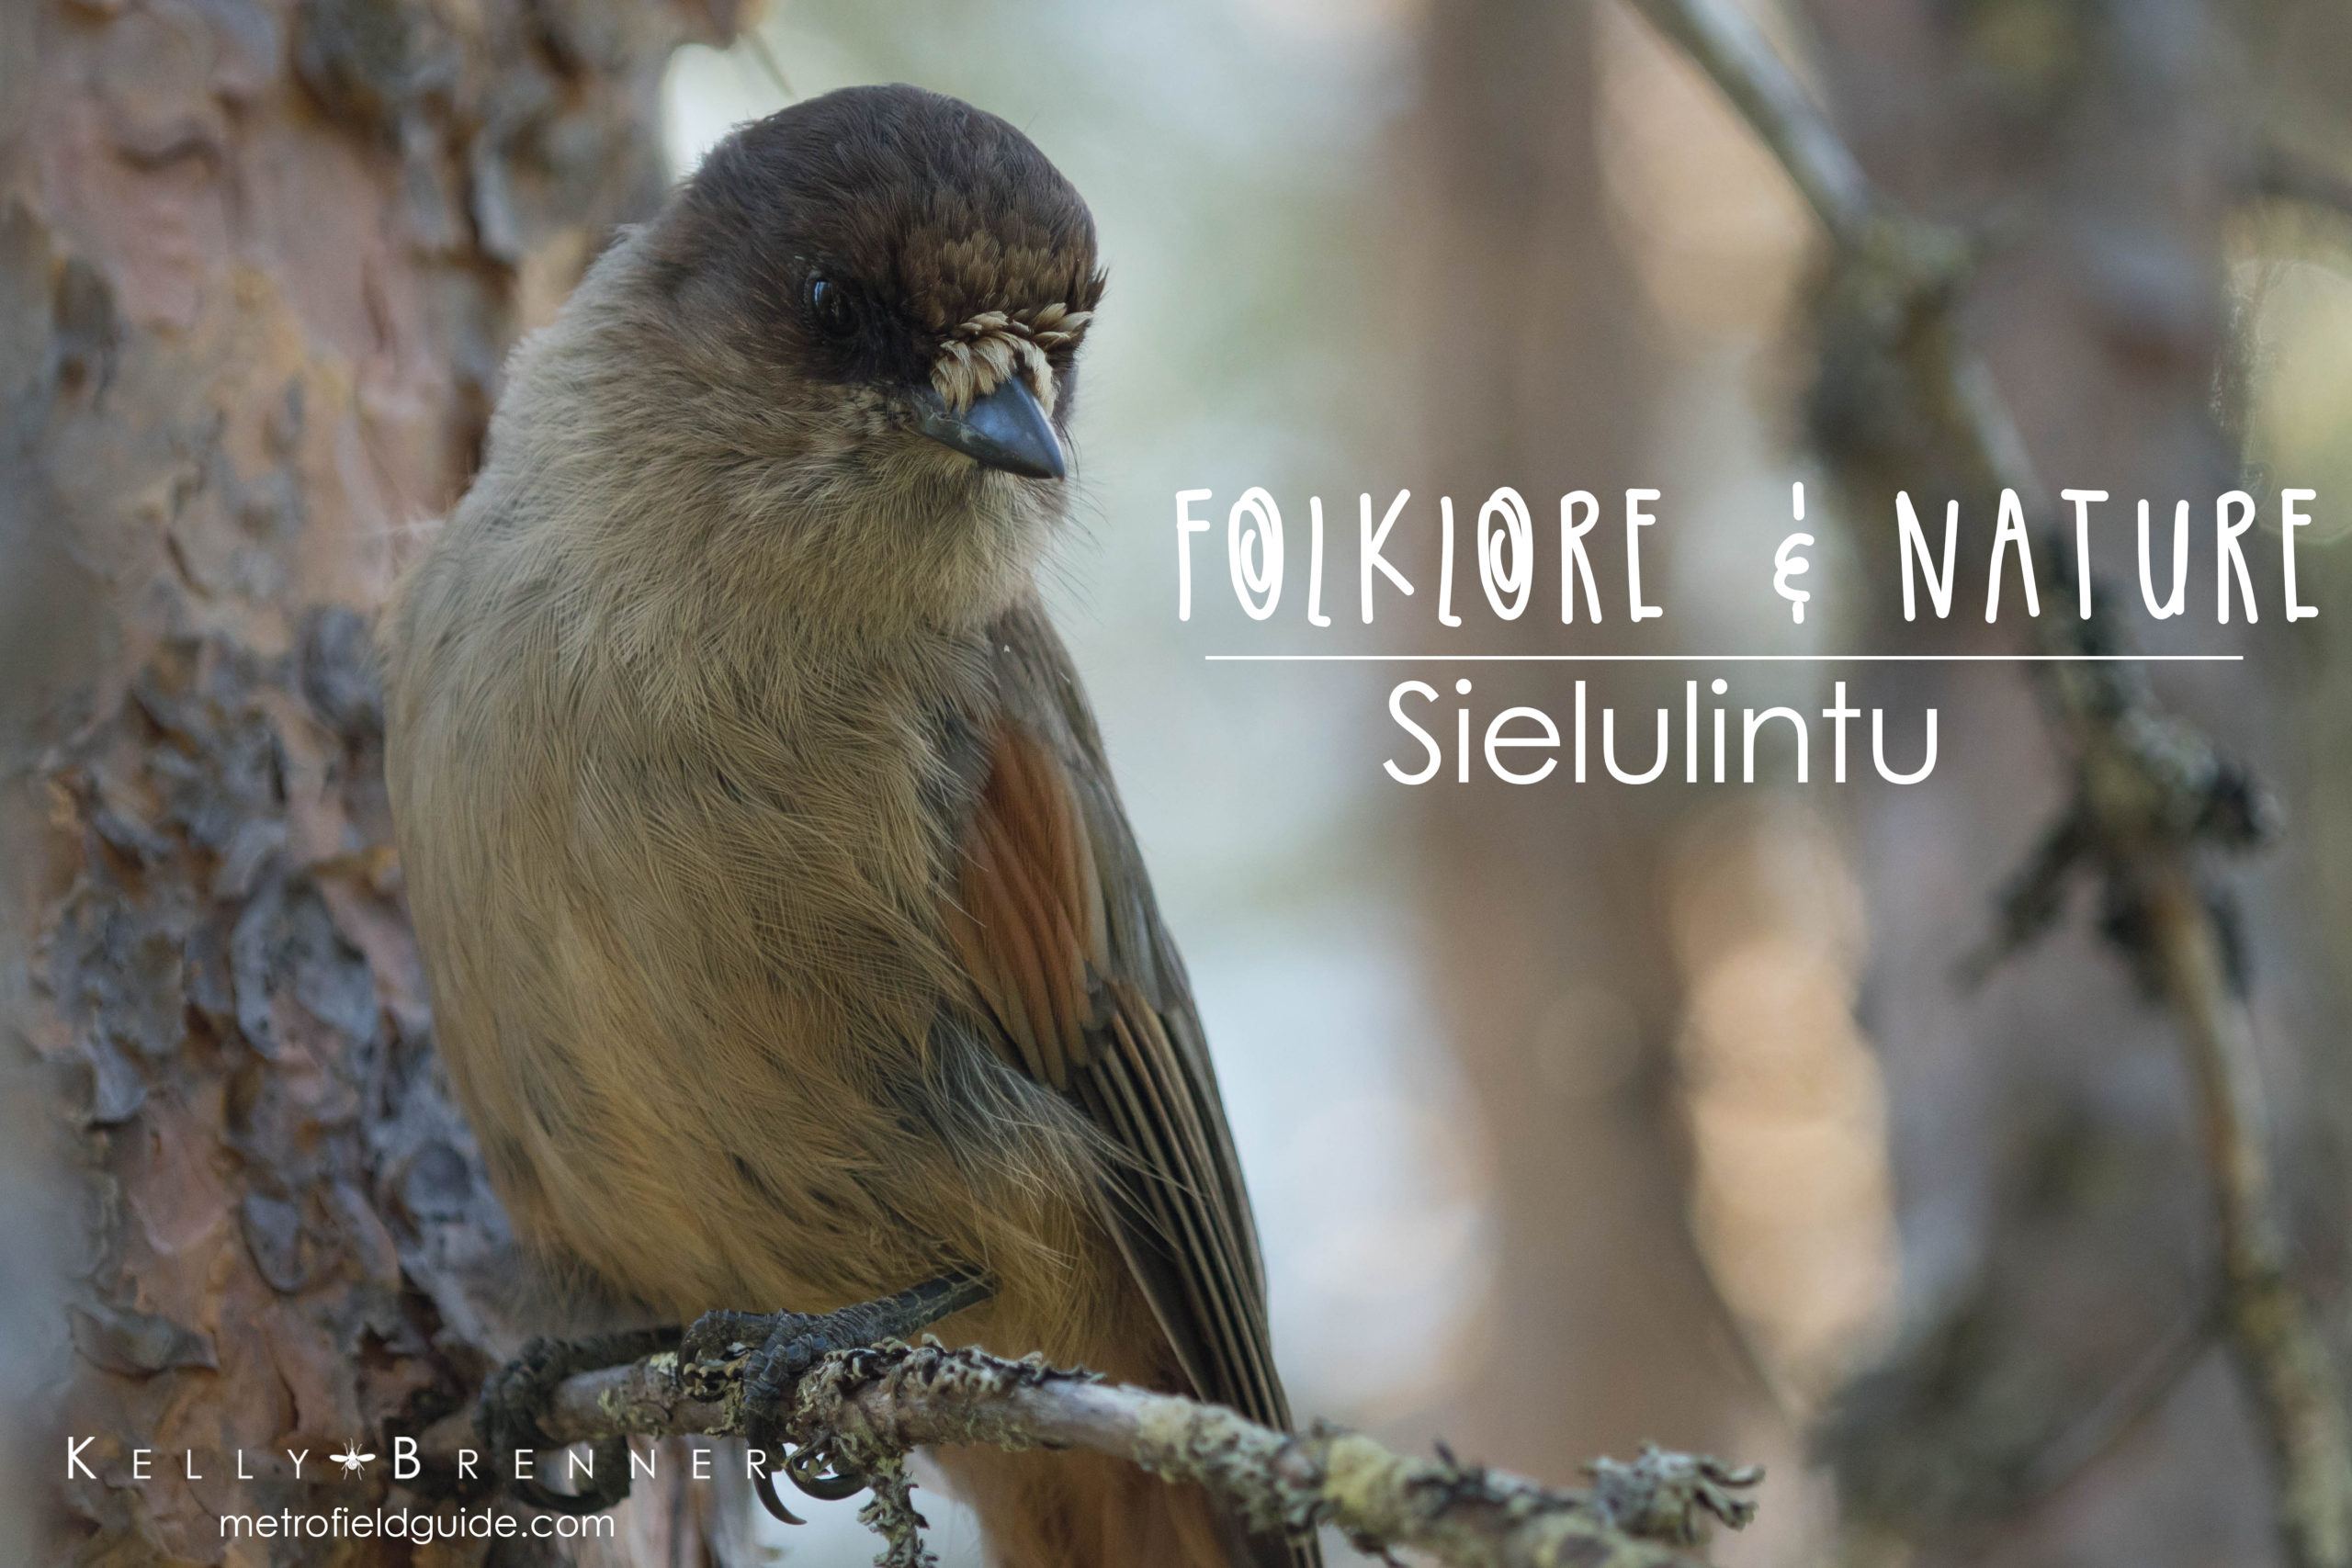 Folklore & Nature: Sielulintu